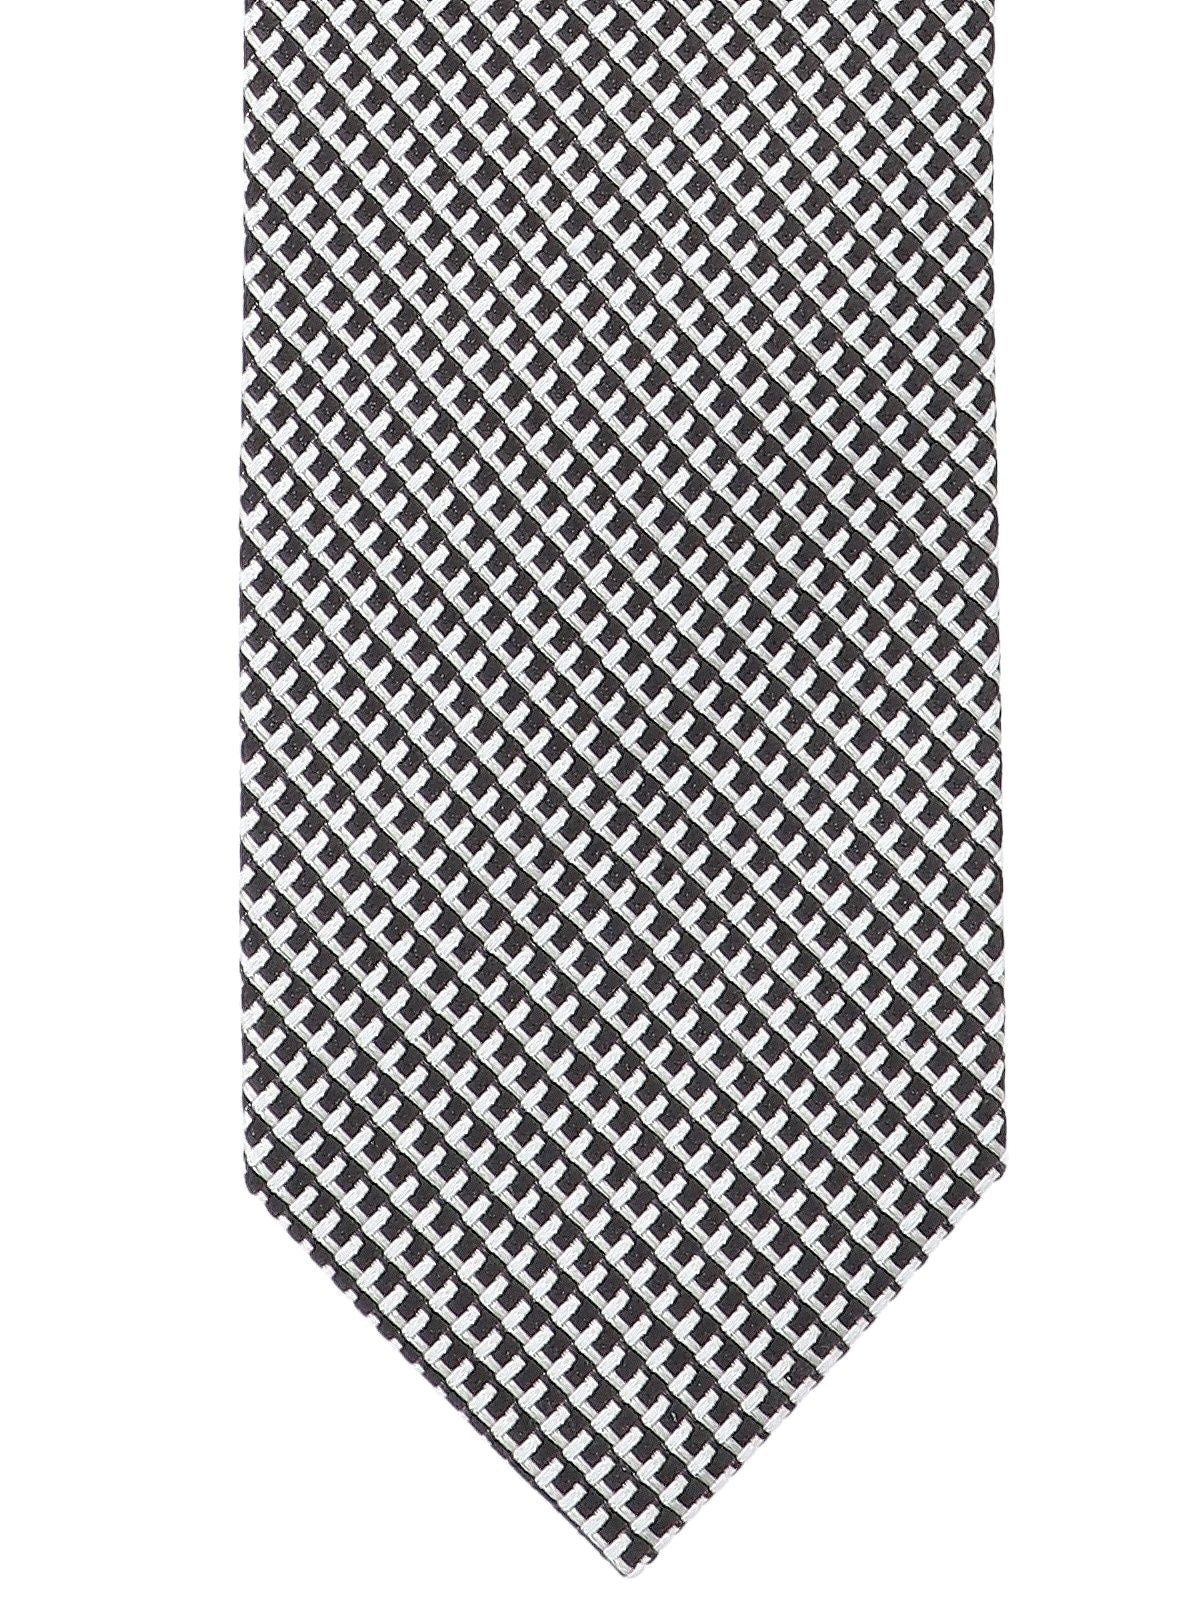 Cravatta motivo Jacquard